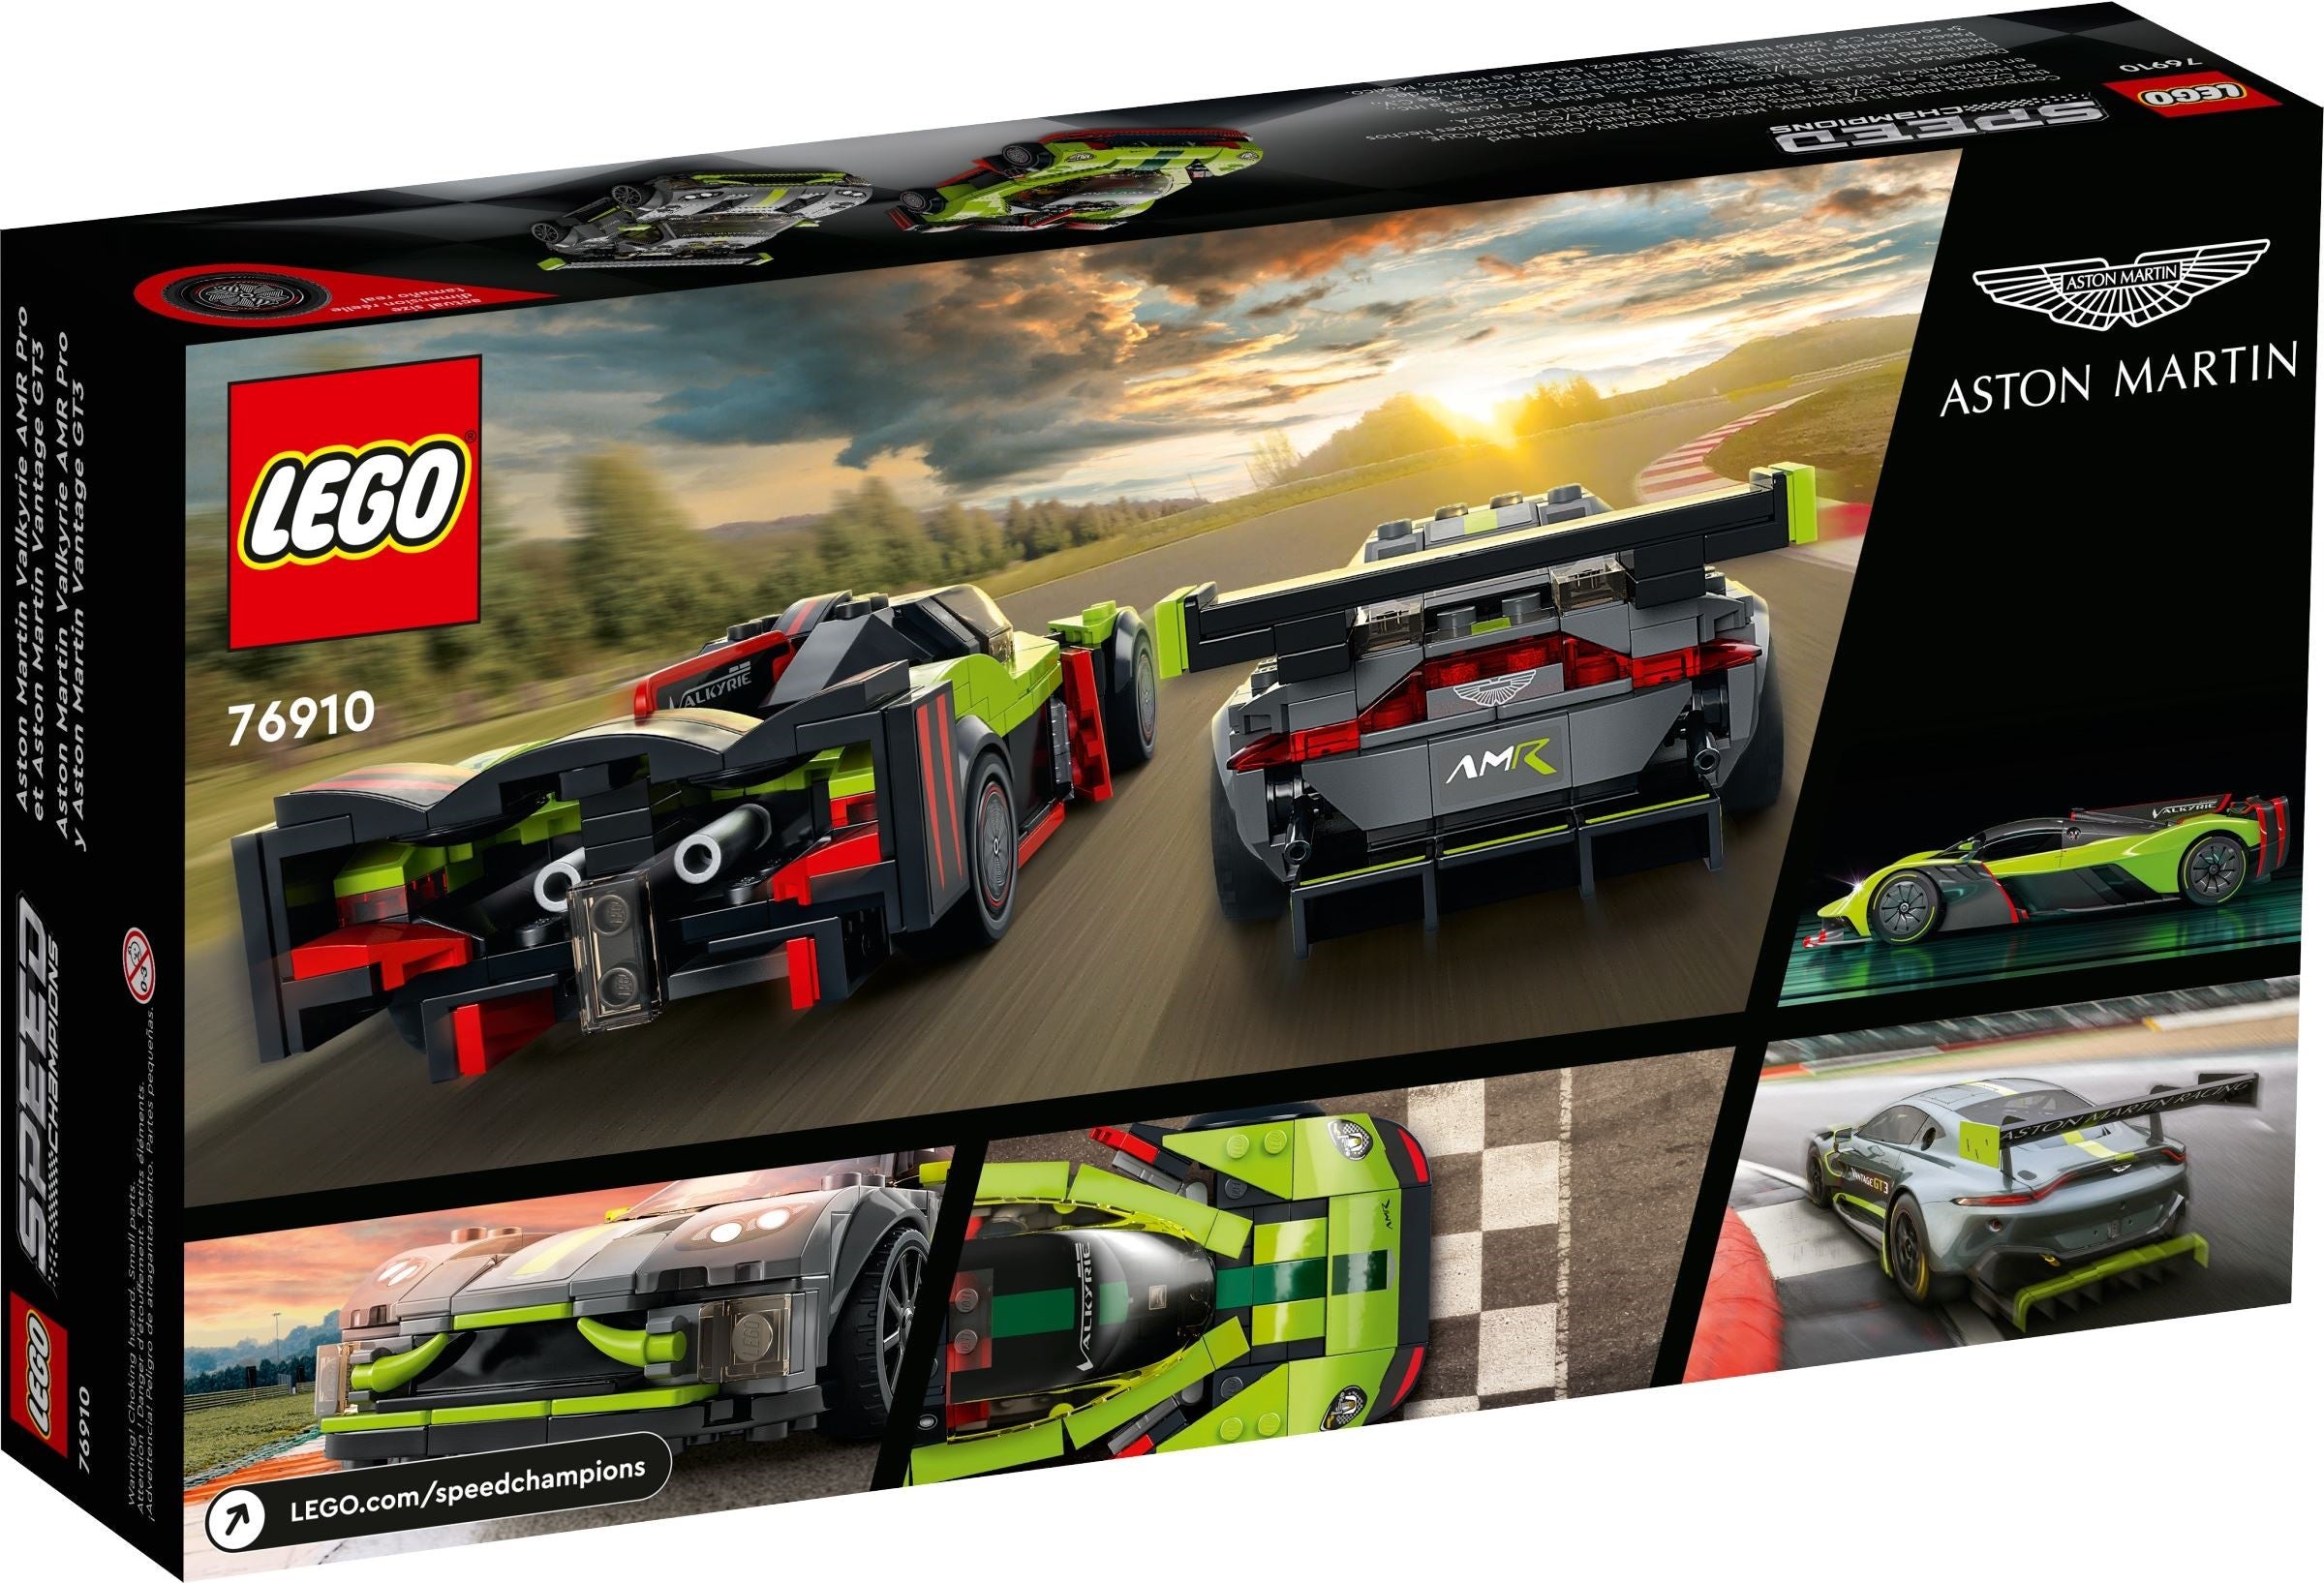 LEGO 76910 Aston Martin Valkyrie AMR Pro and Aston Martin Vantage GT3